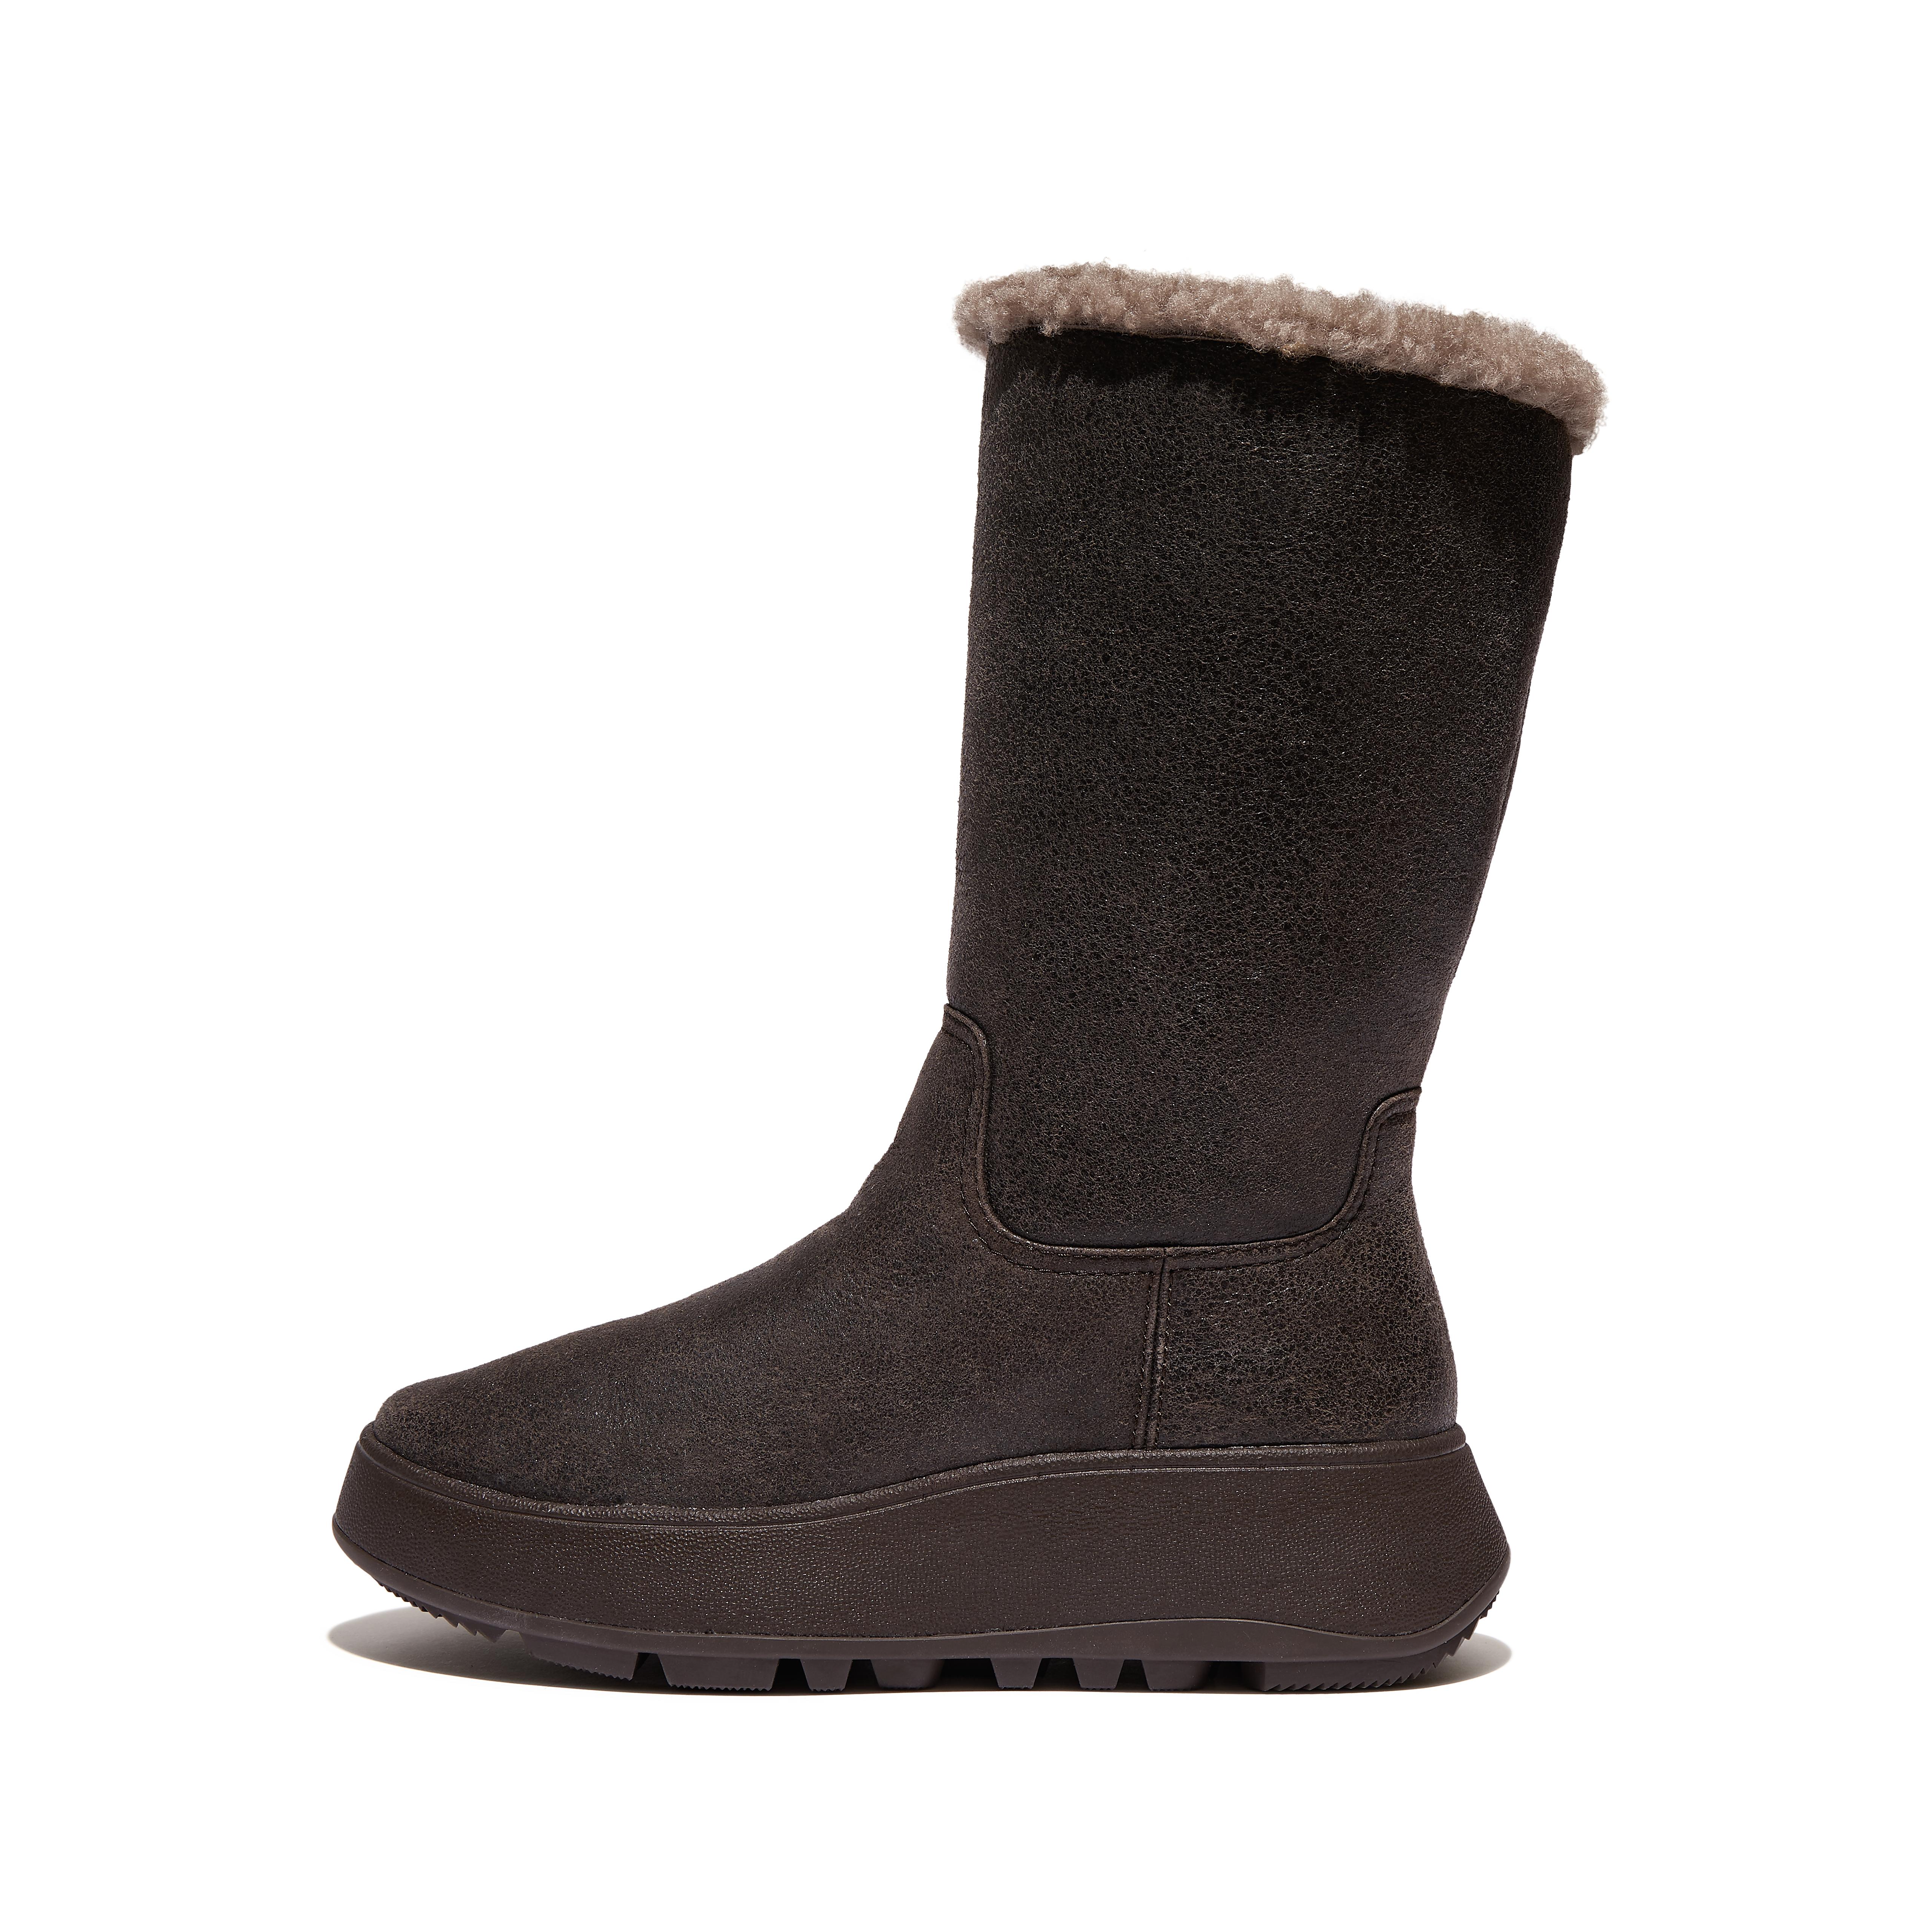 핏플랍 부츠 (털 안감) Fitflop Double-Faced Shearling Leather Flatform Calf Boots,Chocolate